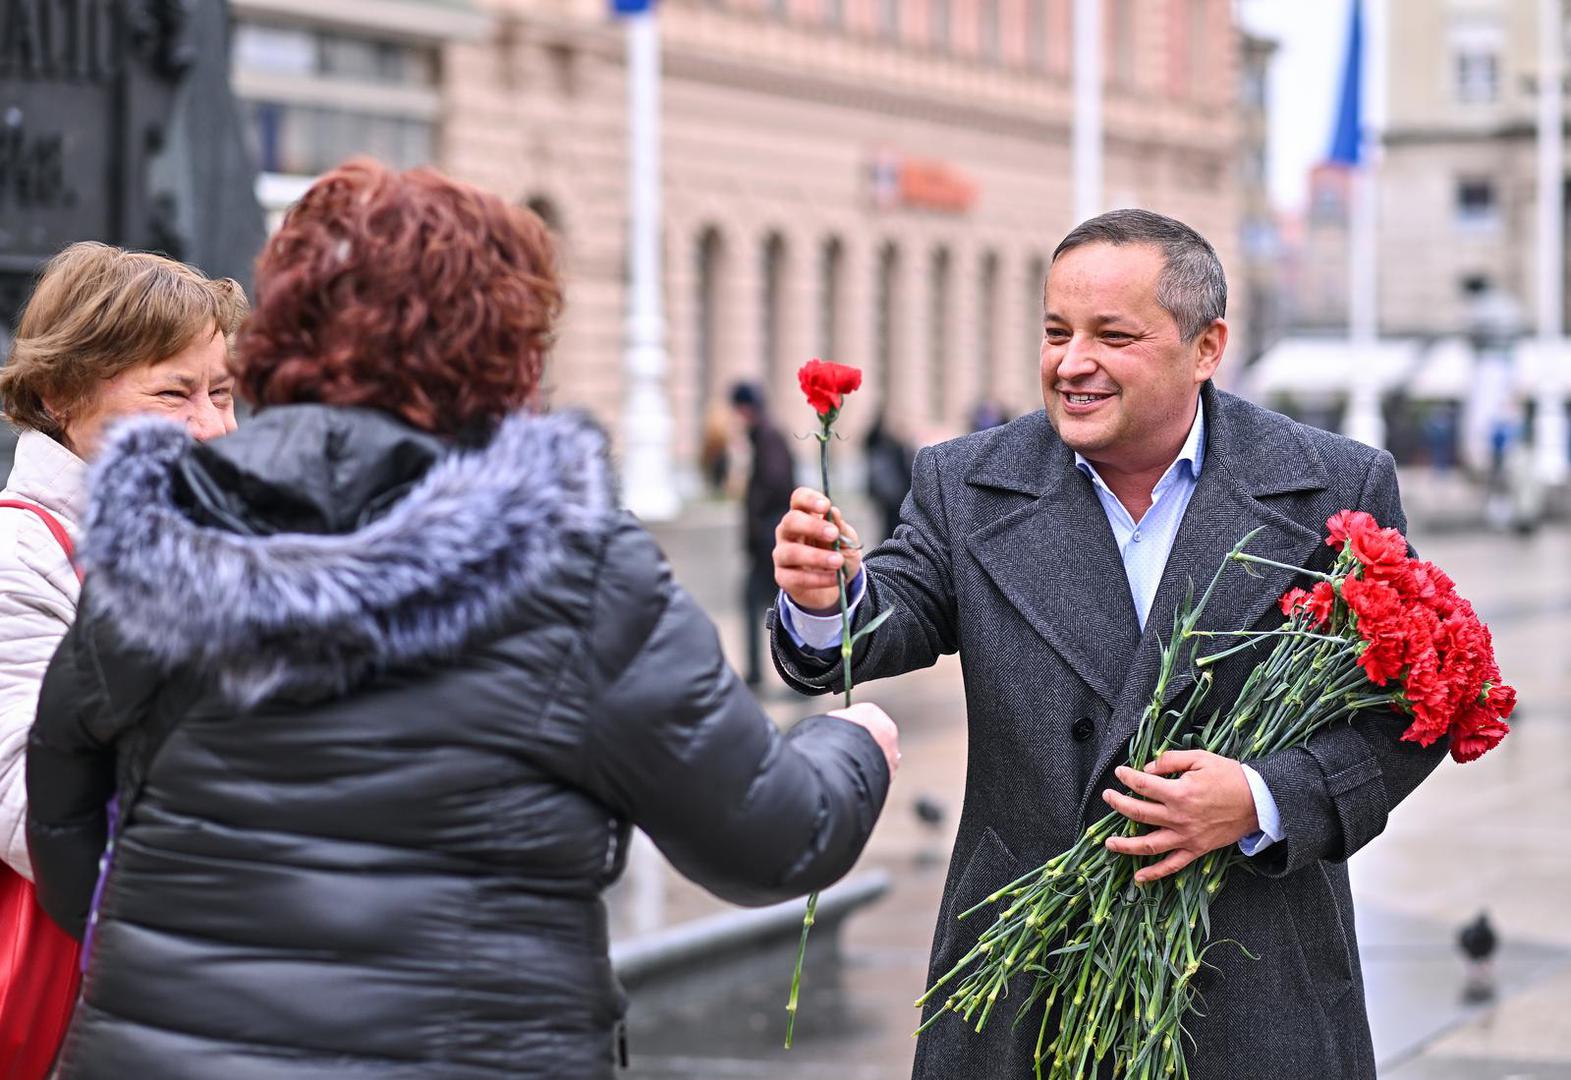 Članice i članovi SDP-a te gradsko vodstvo stranke okupilo se na Trgu bana Jelačića. Sugrađankama su podijelili crvene karanfile i čestitali današnji Međunarodni dan žena. 